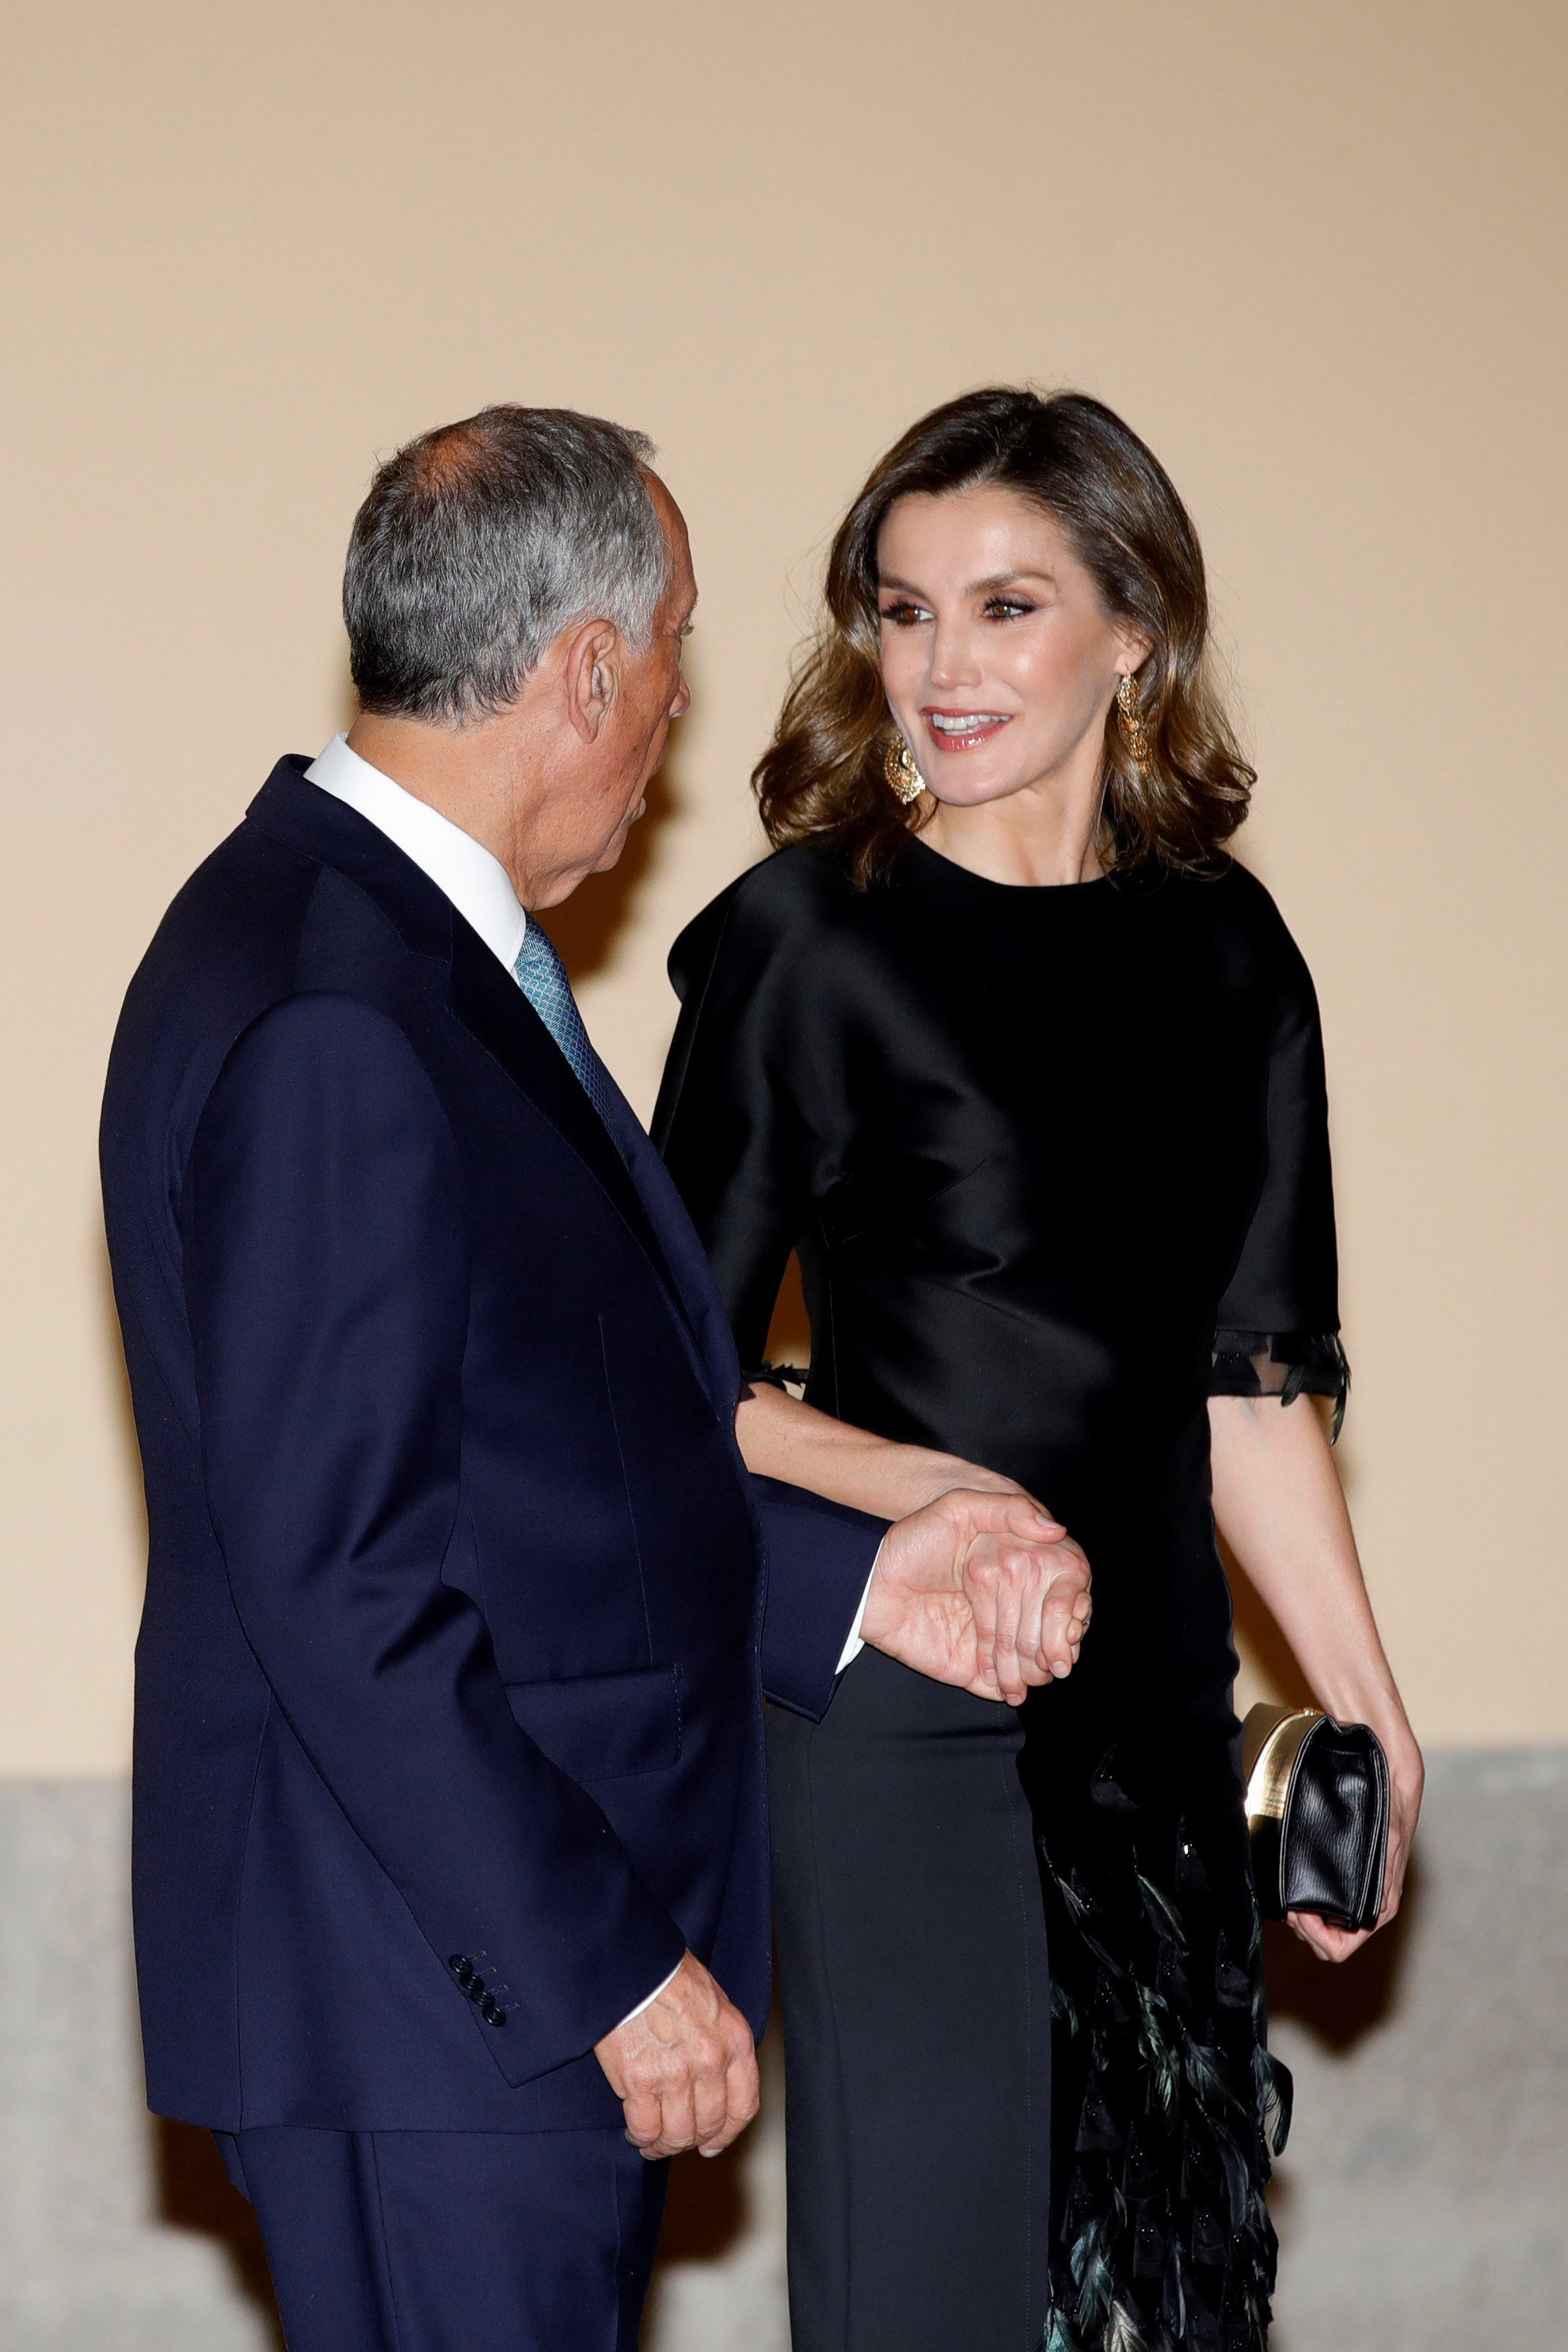 La reina Letícia obliga el president de Portugal a fer-li un regal molt car